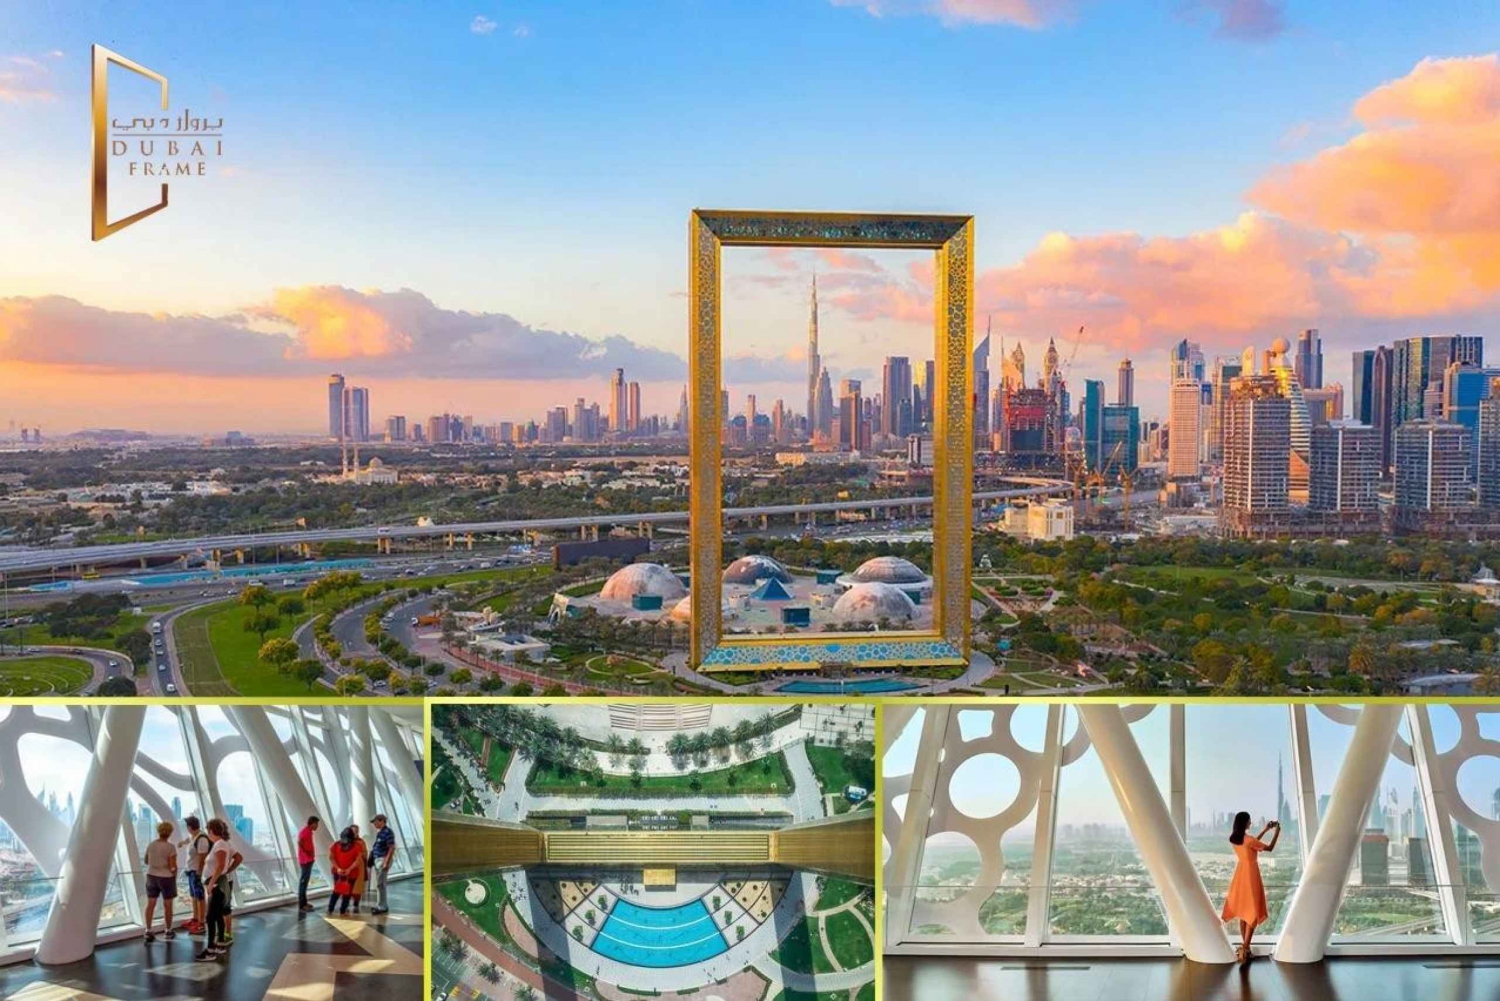 Stadtführung durch Dubai mit allen Attraktionen